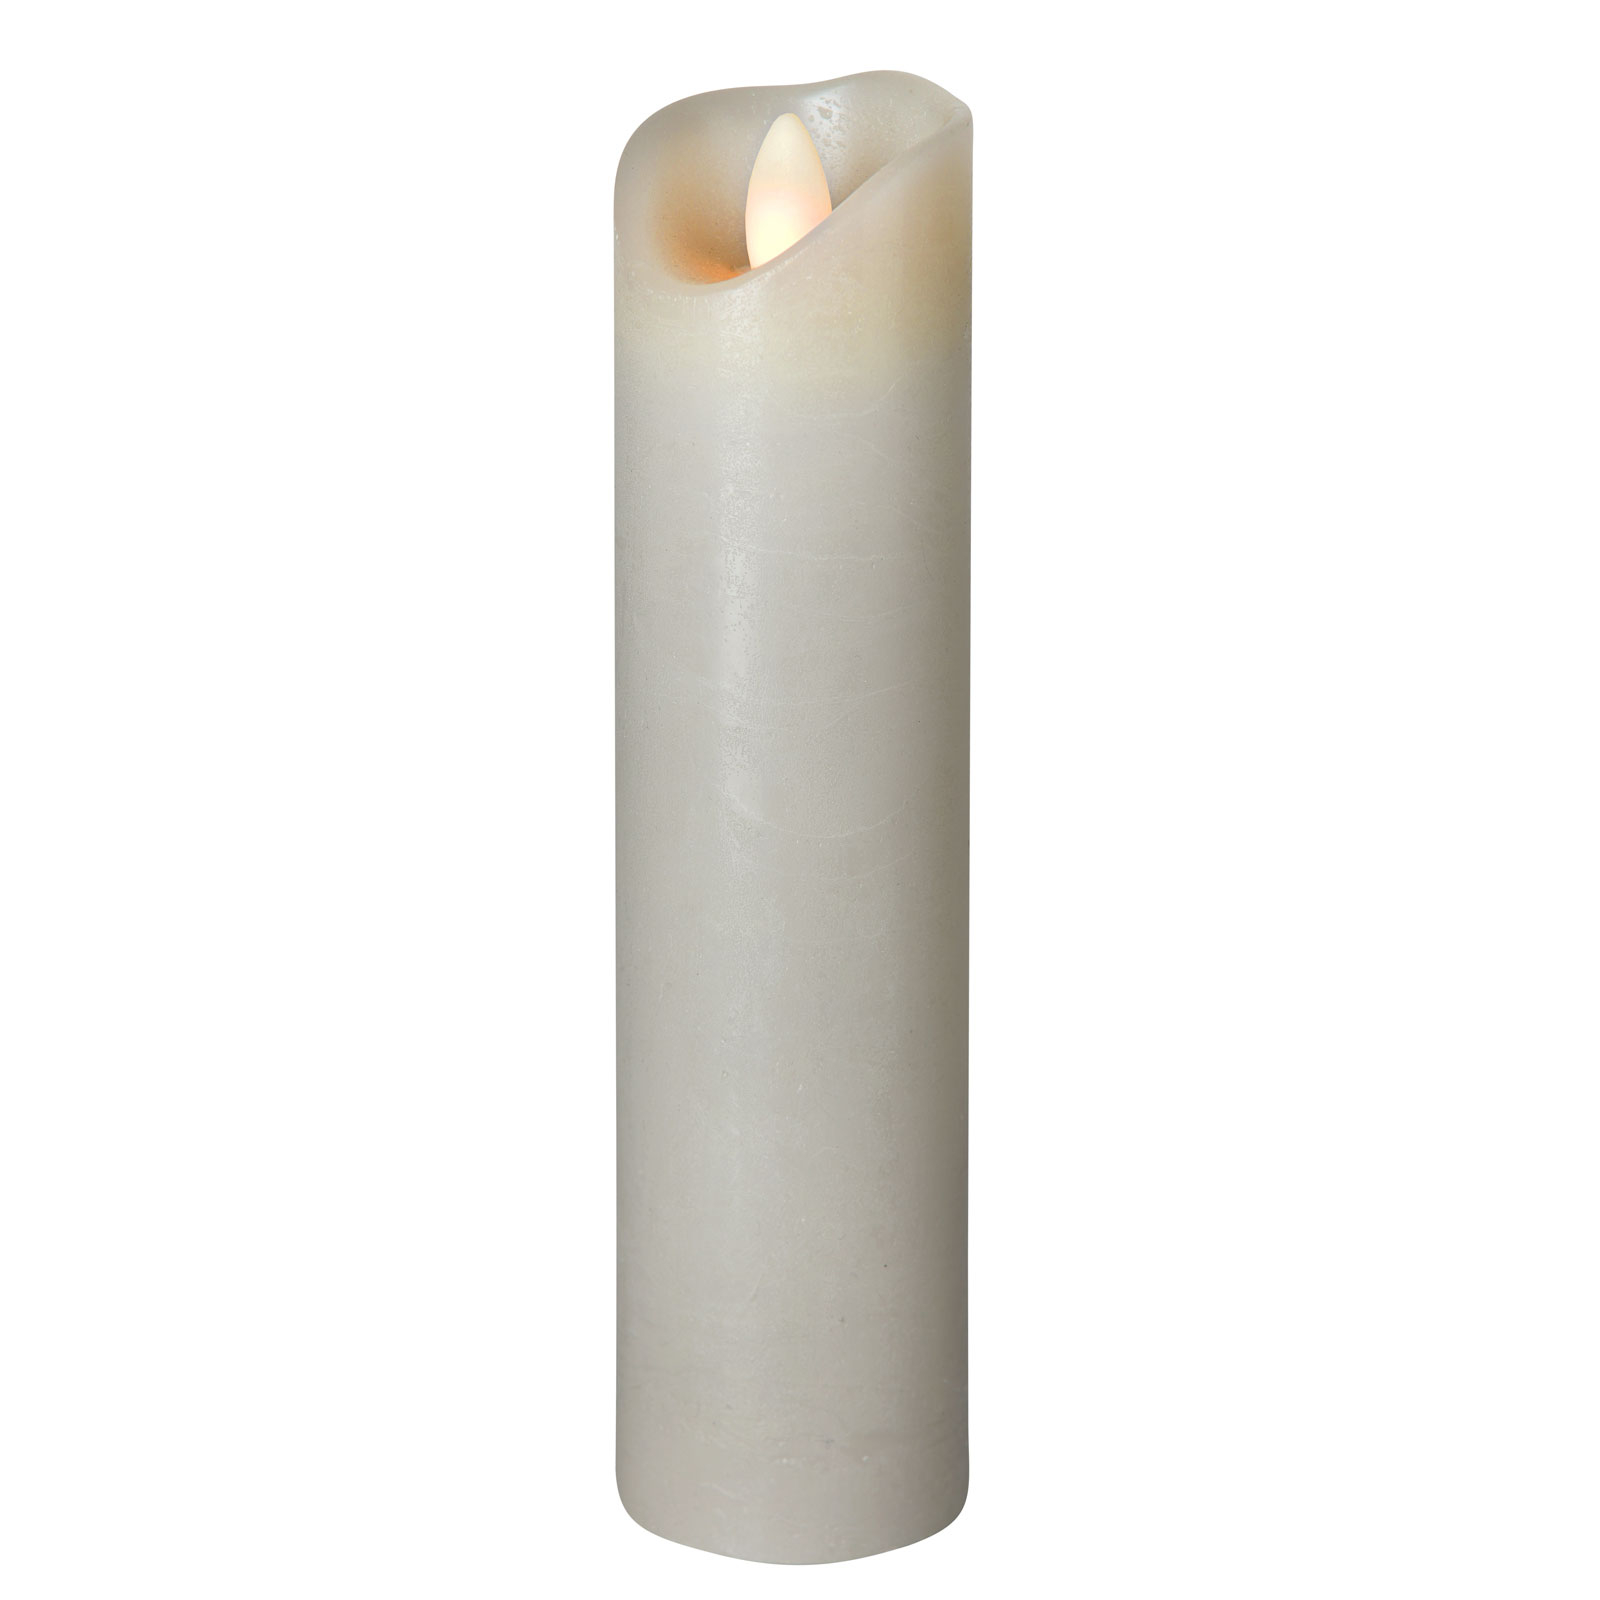 LED sviečka Shine, Ø 5 cm, sivá, V20 cm